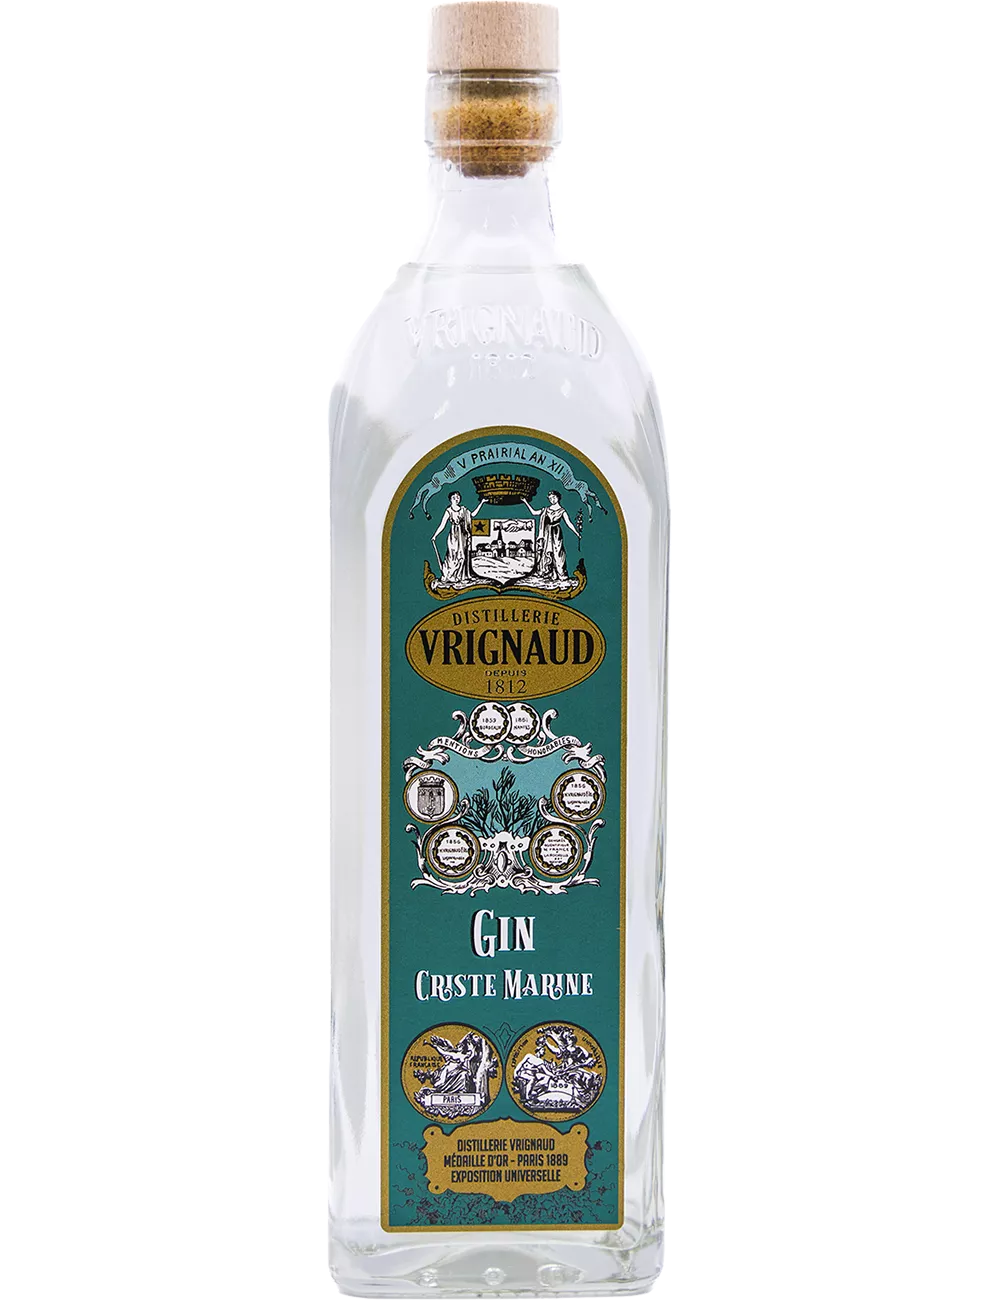 Vrignaud - Criste Marine - Distilled gin